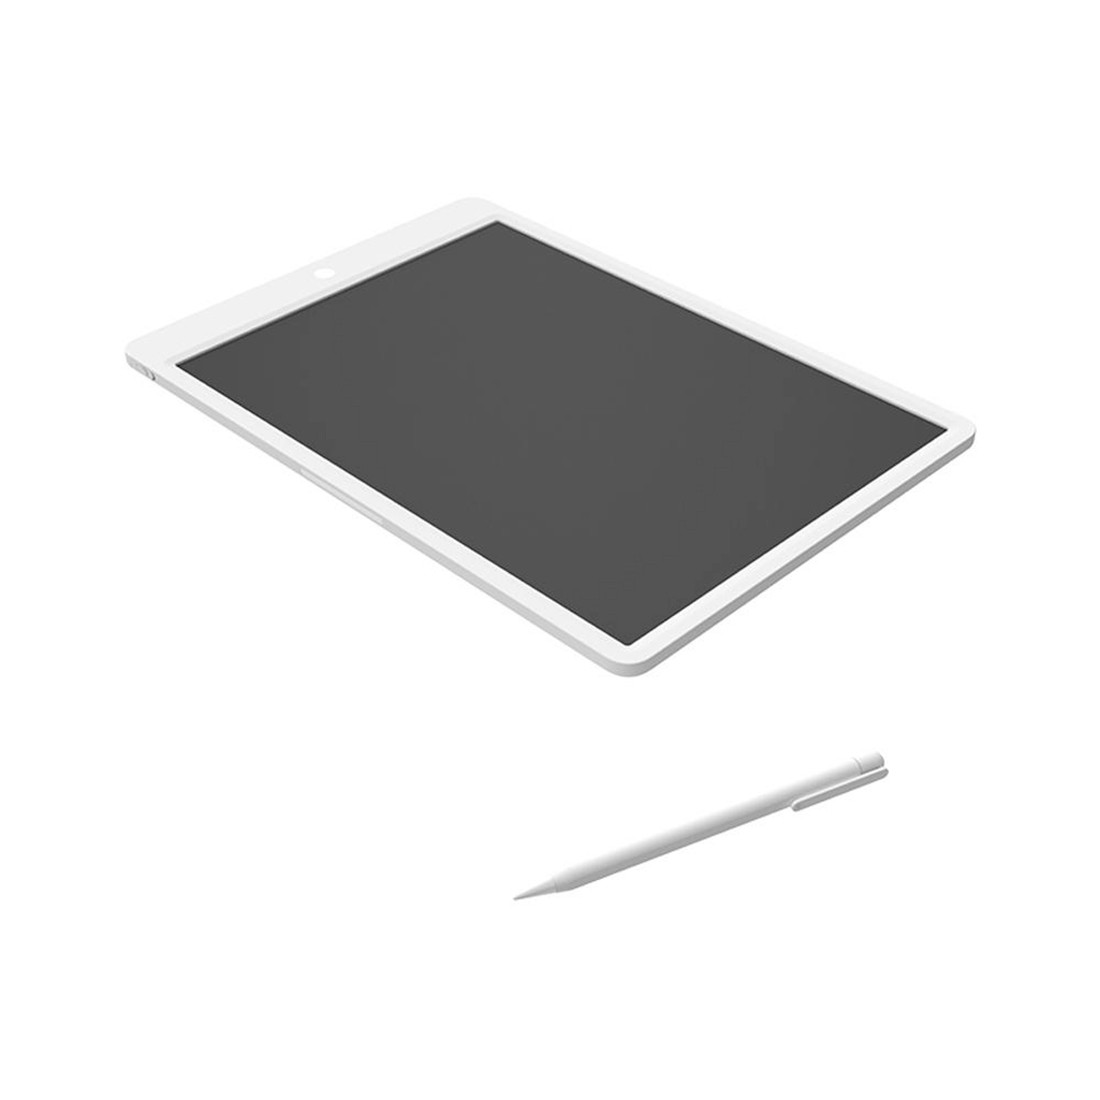 Графический планшет Mijia LCD Small Blackboard 13.5, фото 1